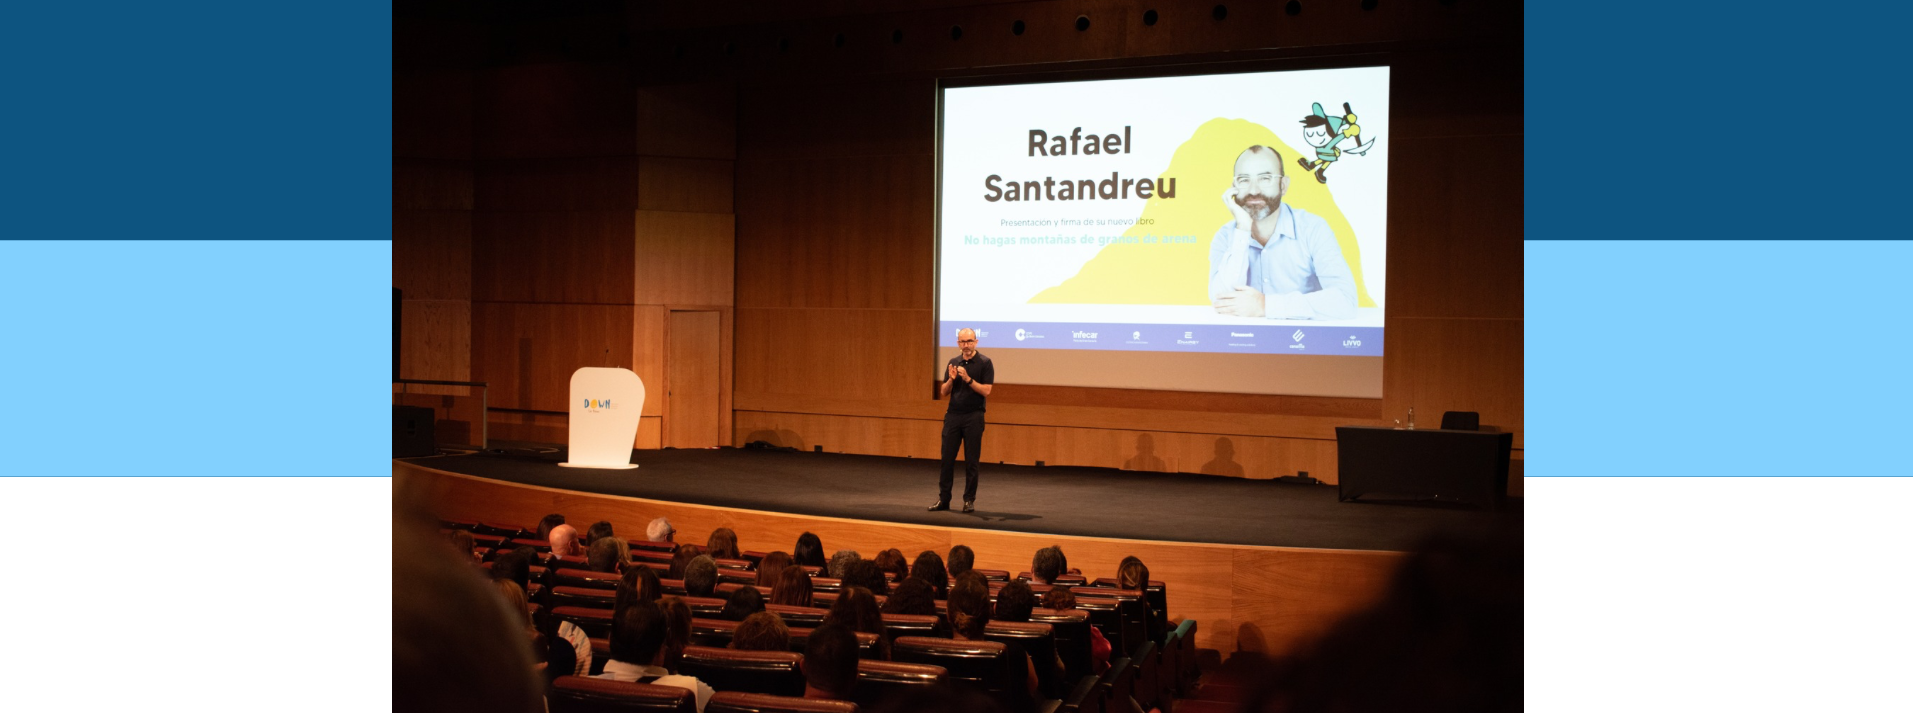 Rafael Santandreu subido en un escenario haciendo una presentación